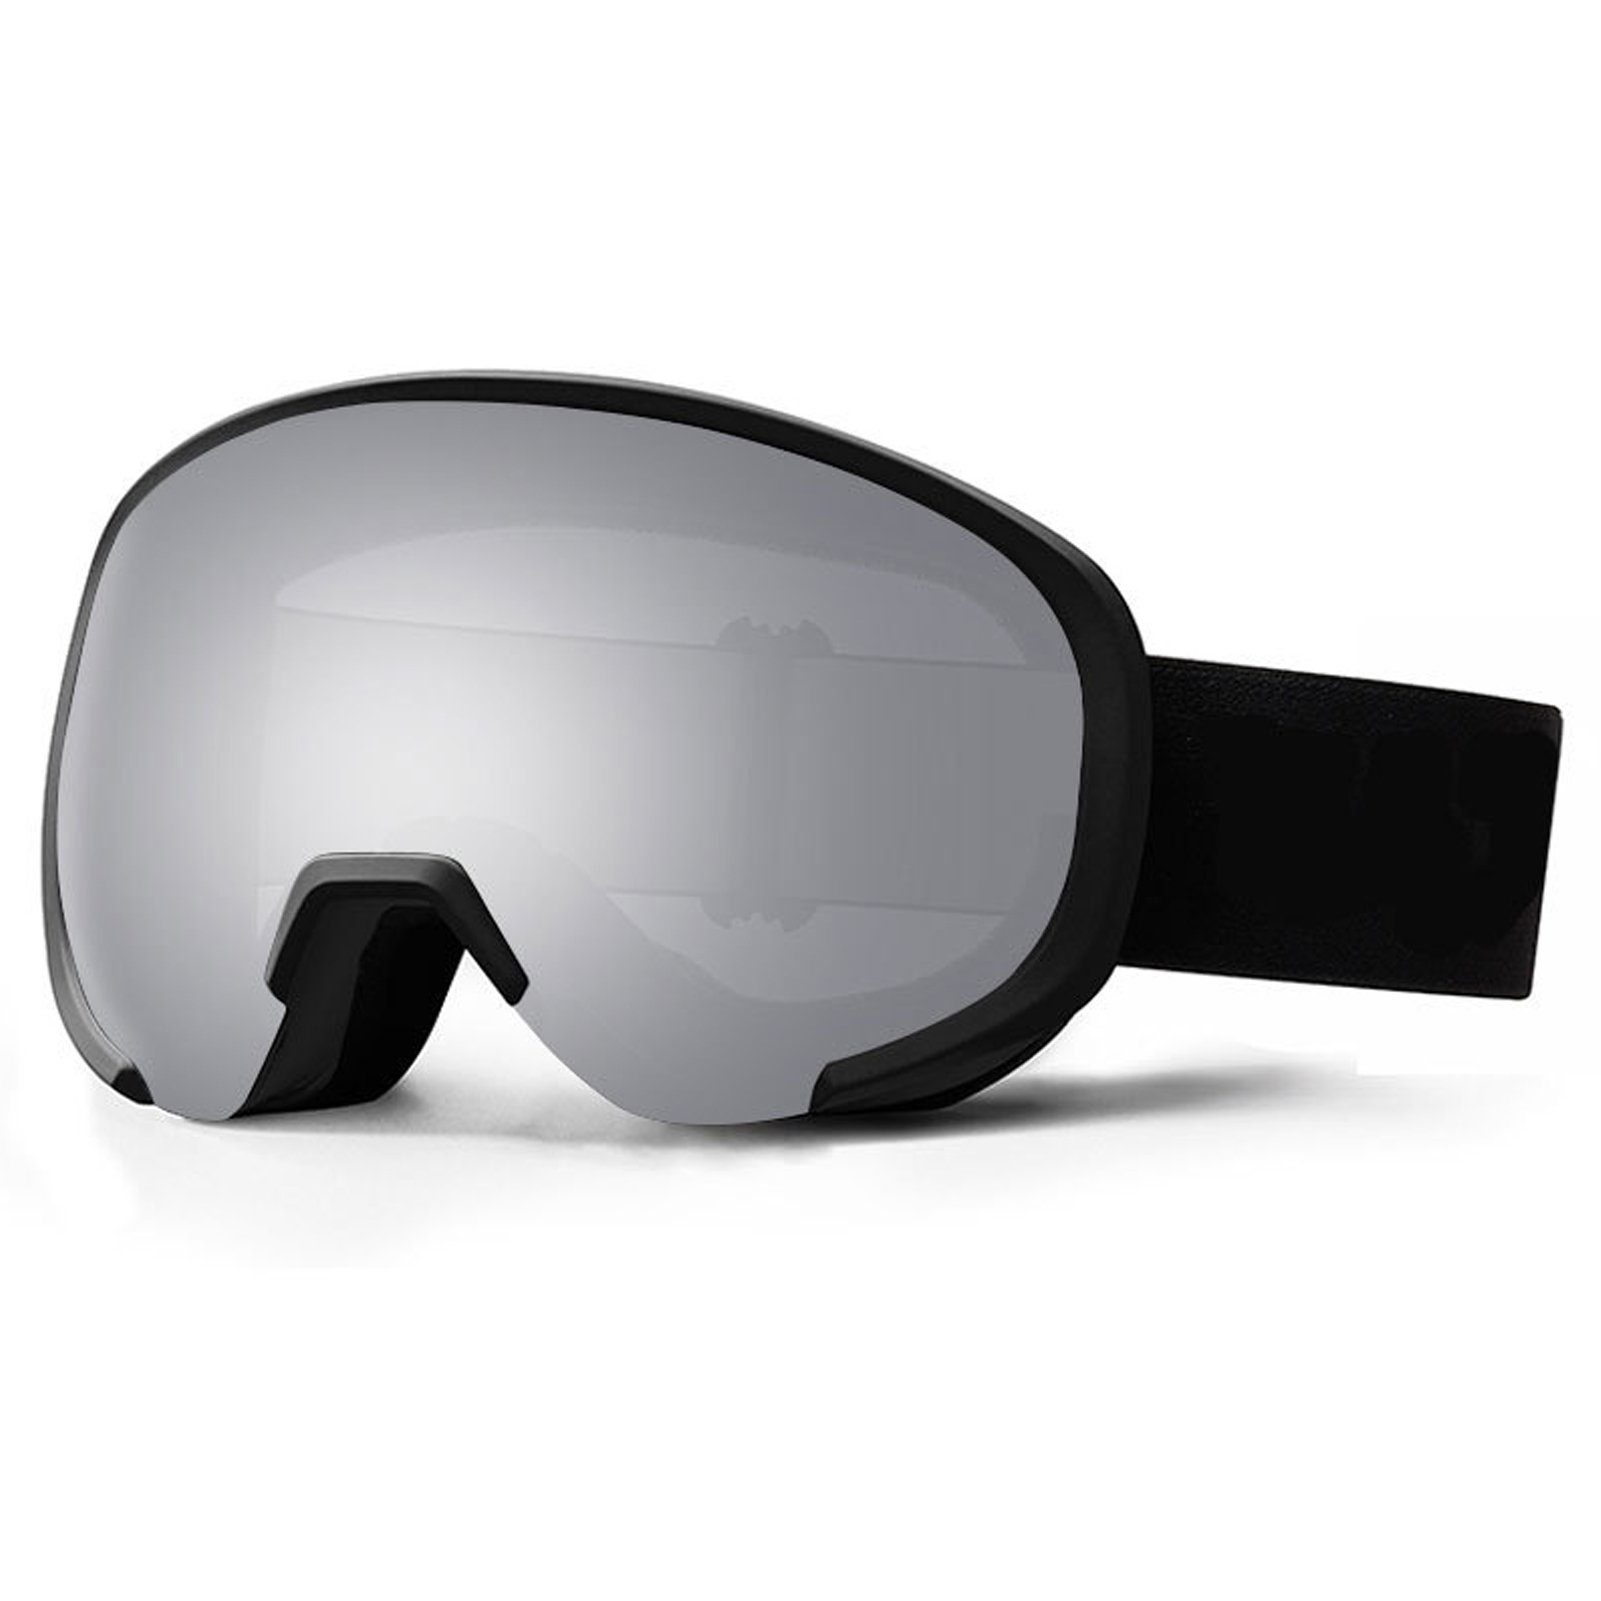 Skibrille Sicht, Ski-Snowboard-Brille Rutschfeste 3 Mit Breiter Blusmart